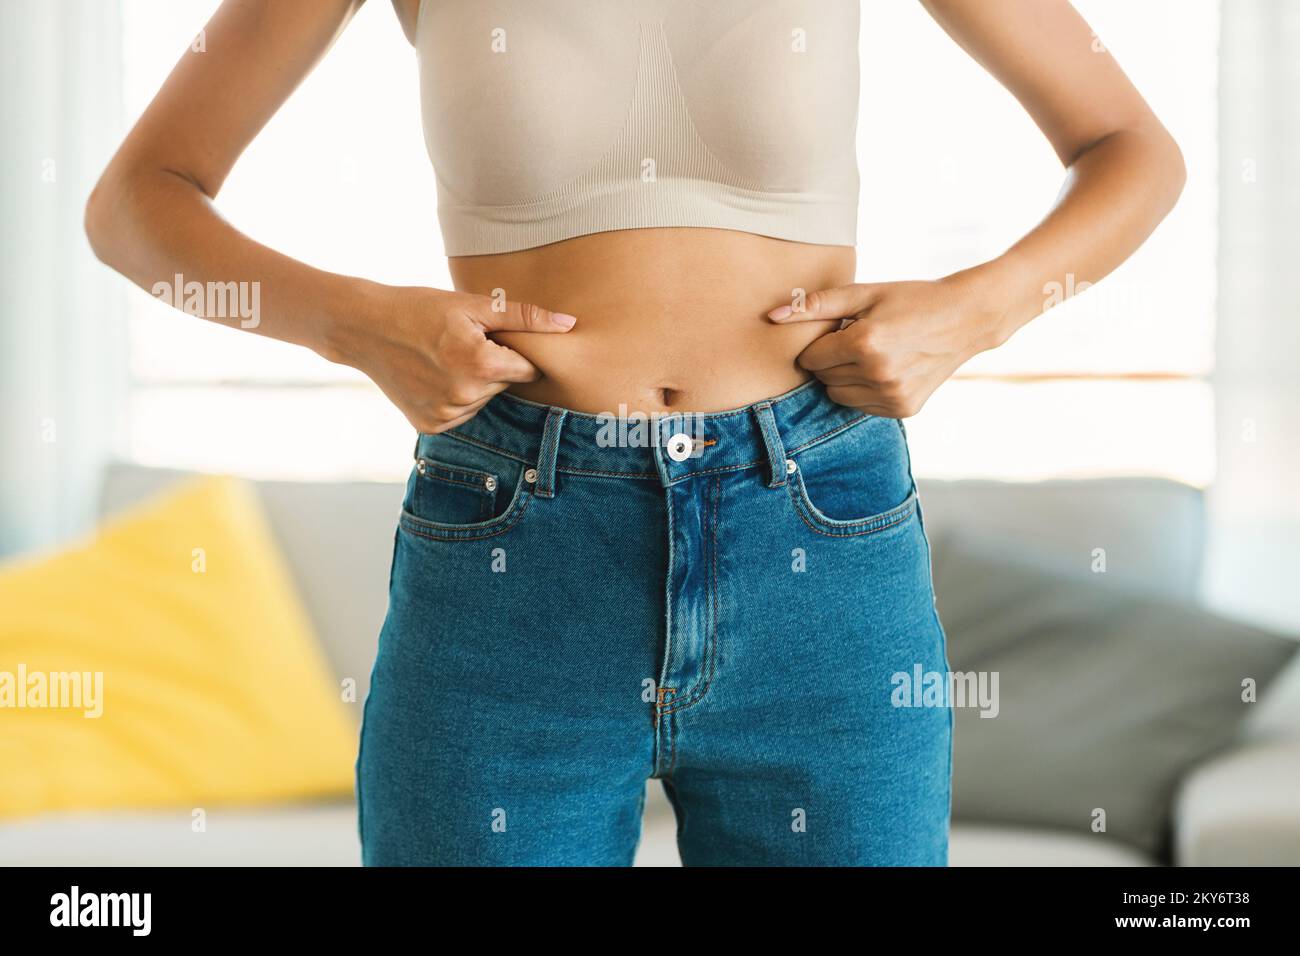 Jeune femme en jeans et blanc haut de la compression de sa graisse de ventre, la planification de la formation et de manger des aliments sains Banque D'Images